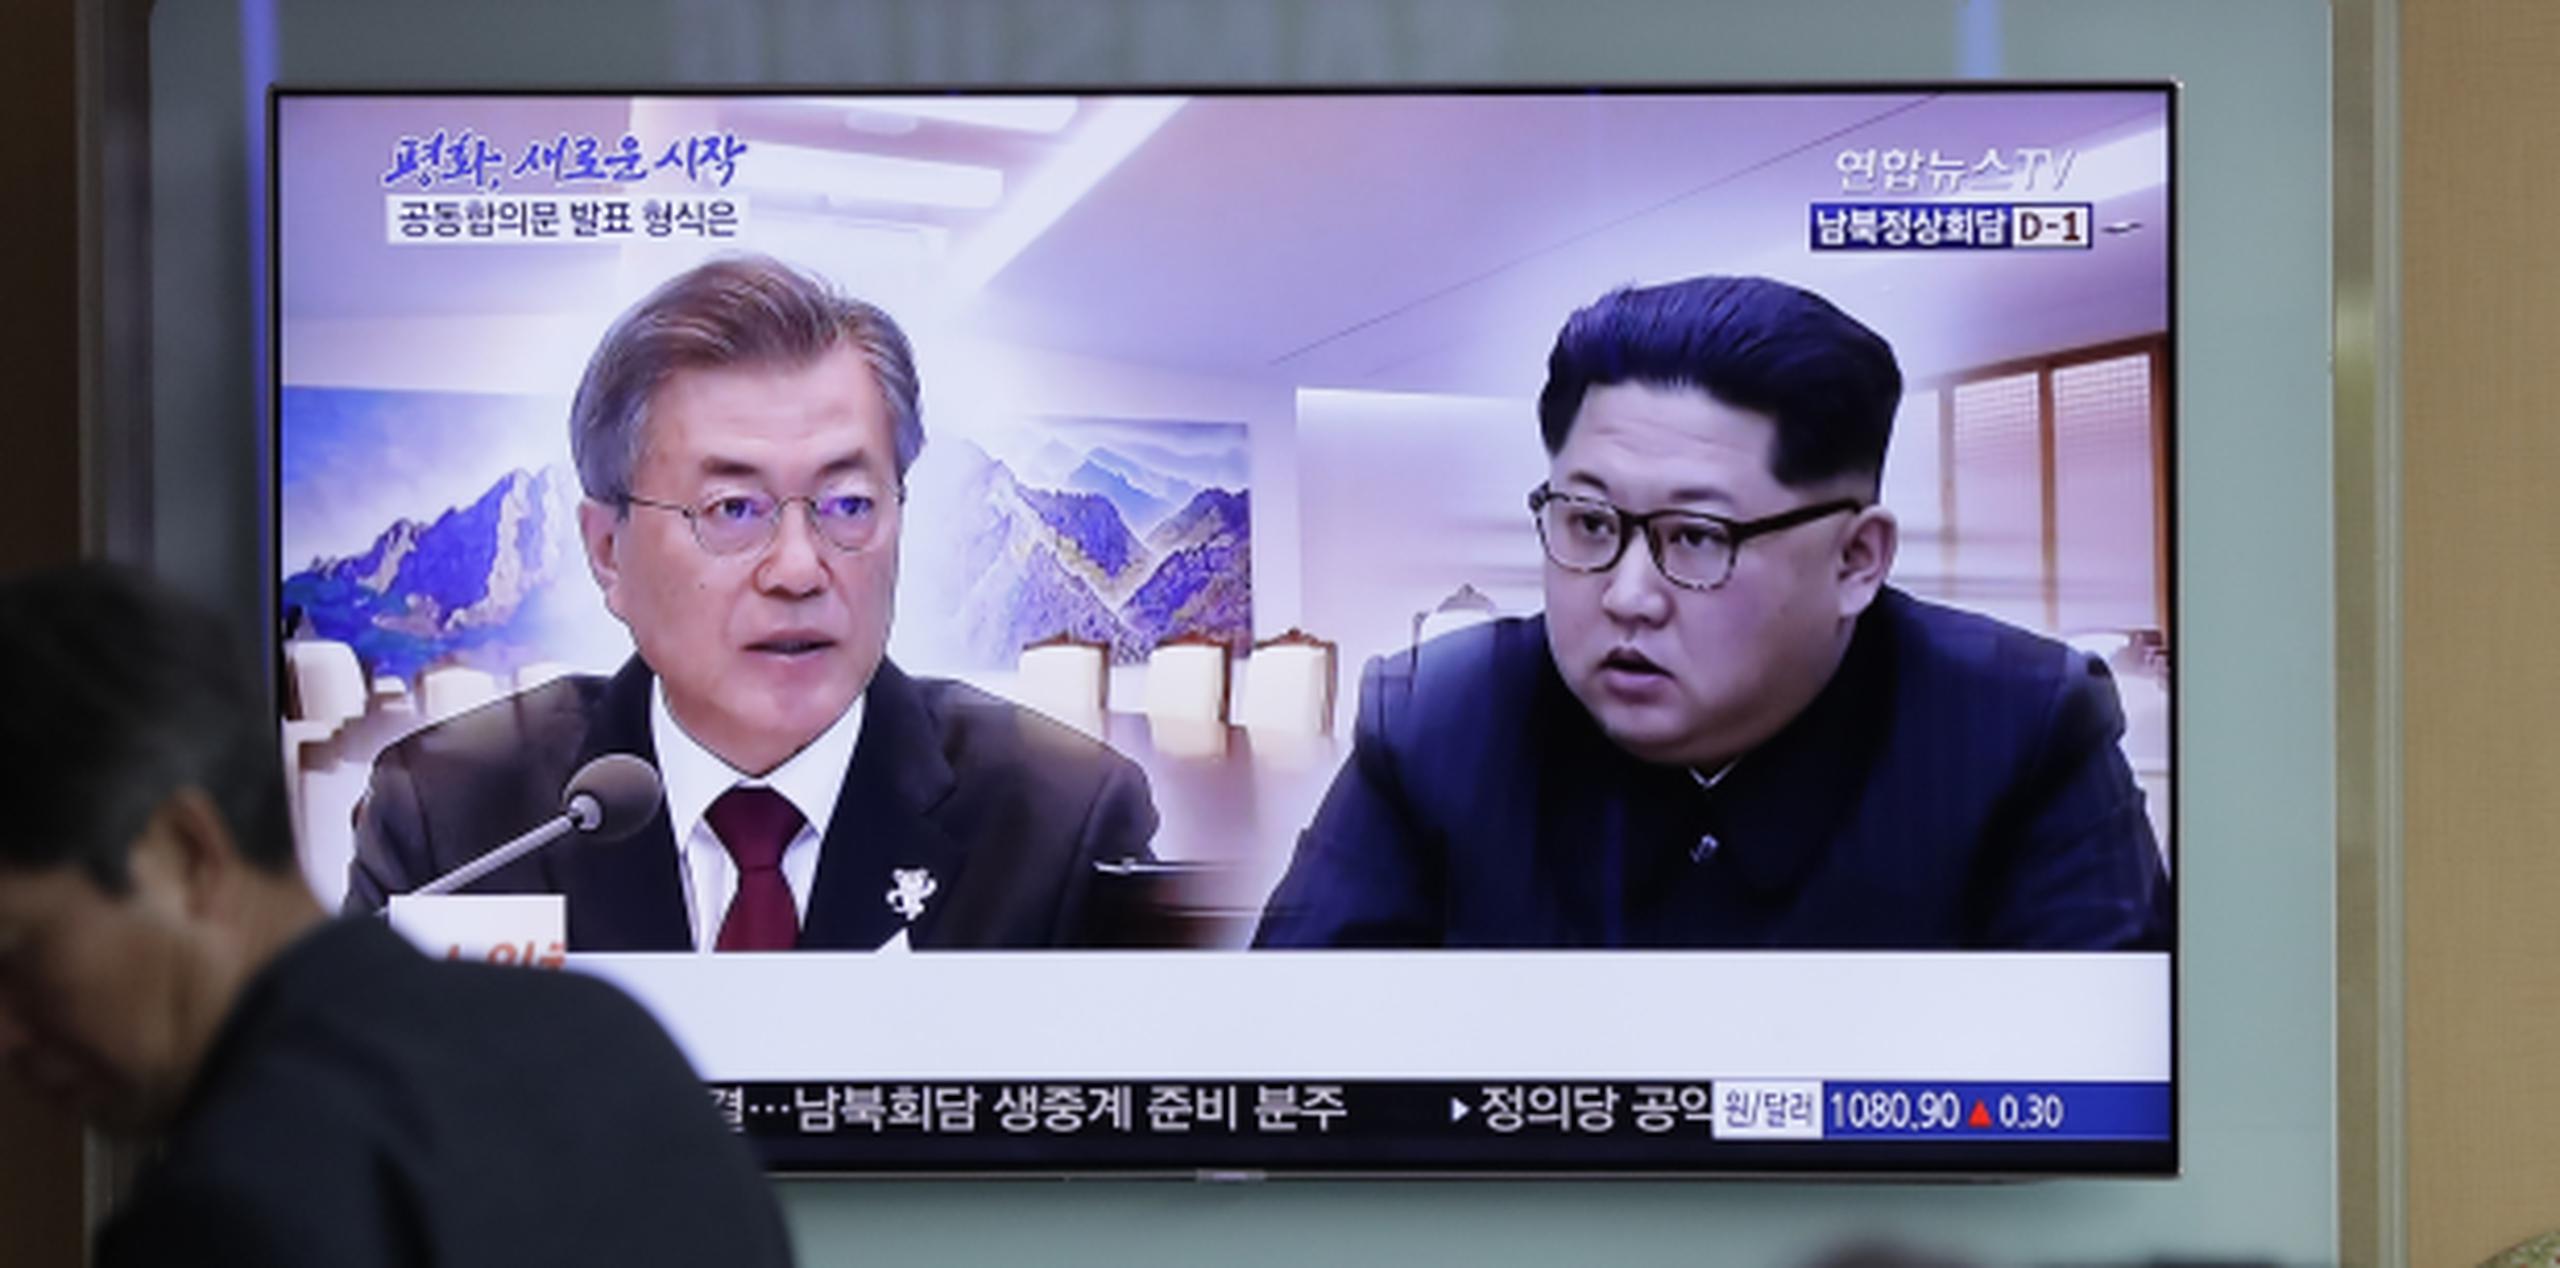 Moon (izquierda) recibirá a Kim cuando el líder cruce las losas que concreto que forman la línea de demarcación militar entre las dos naciones rivales el viernes por la mañana. (AP)